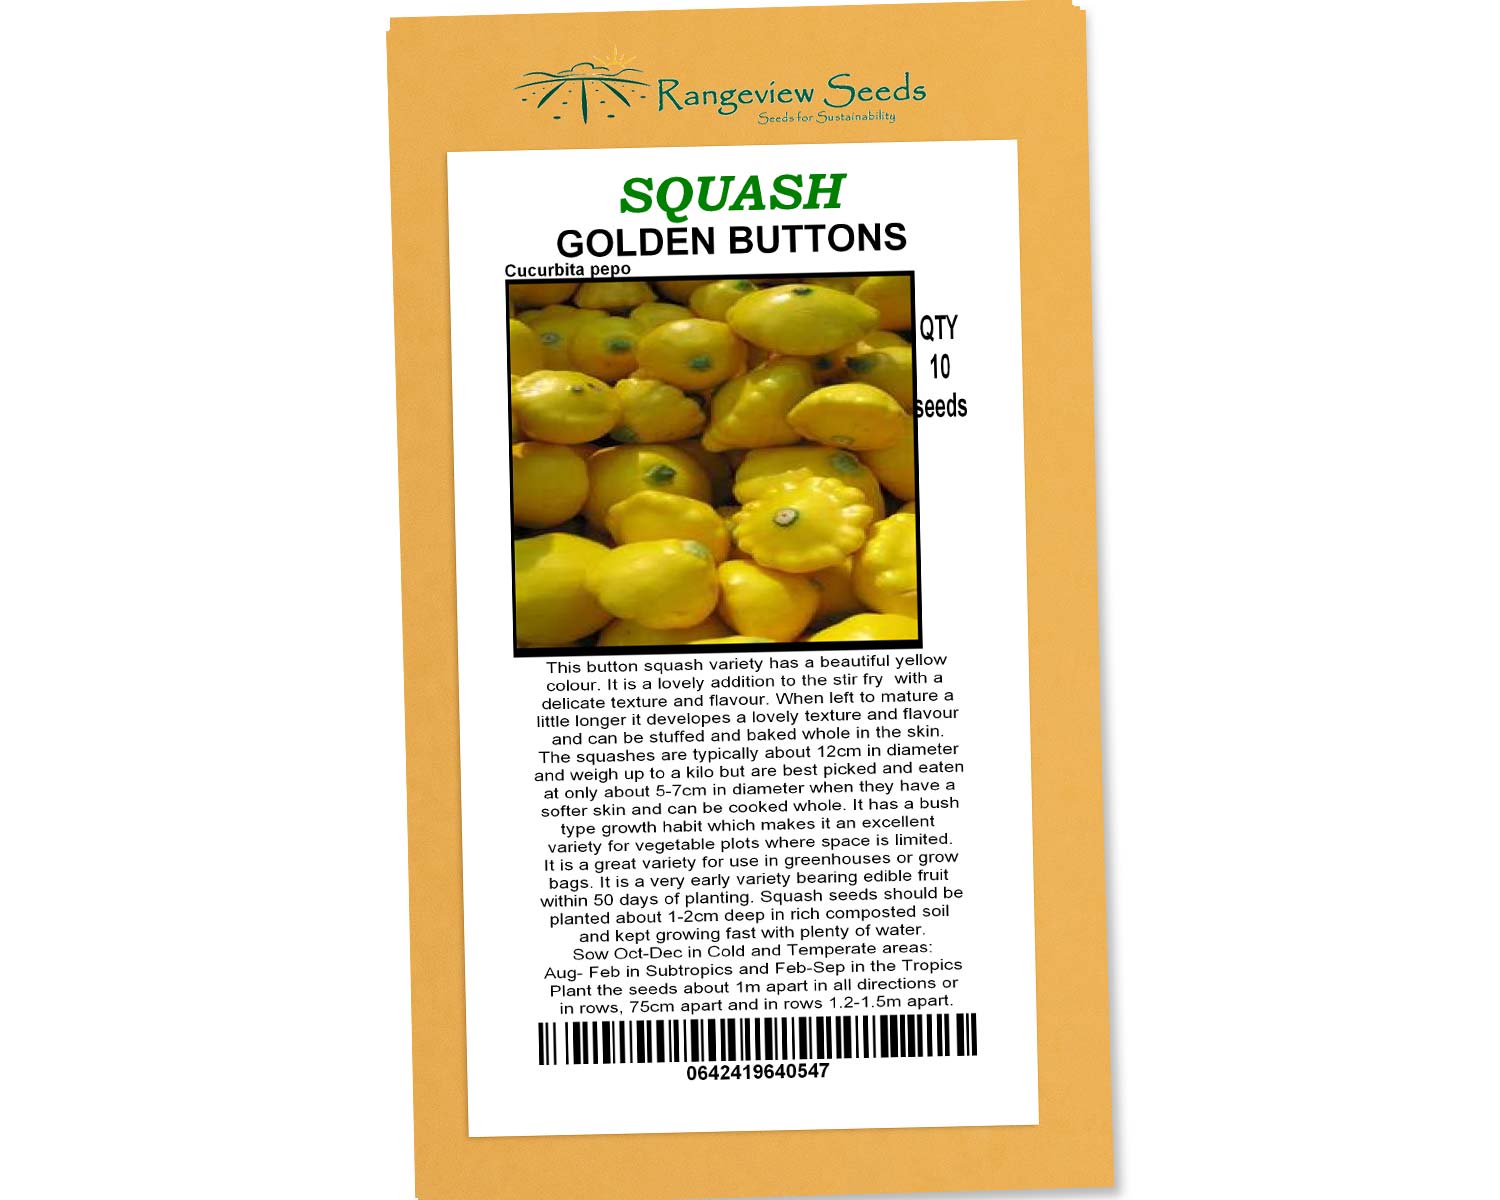 Squash Golden Buttons - Rangeview Seeds